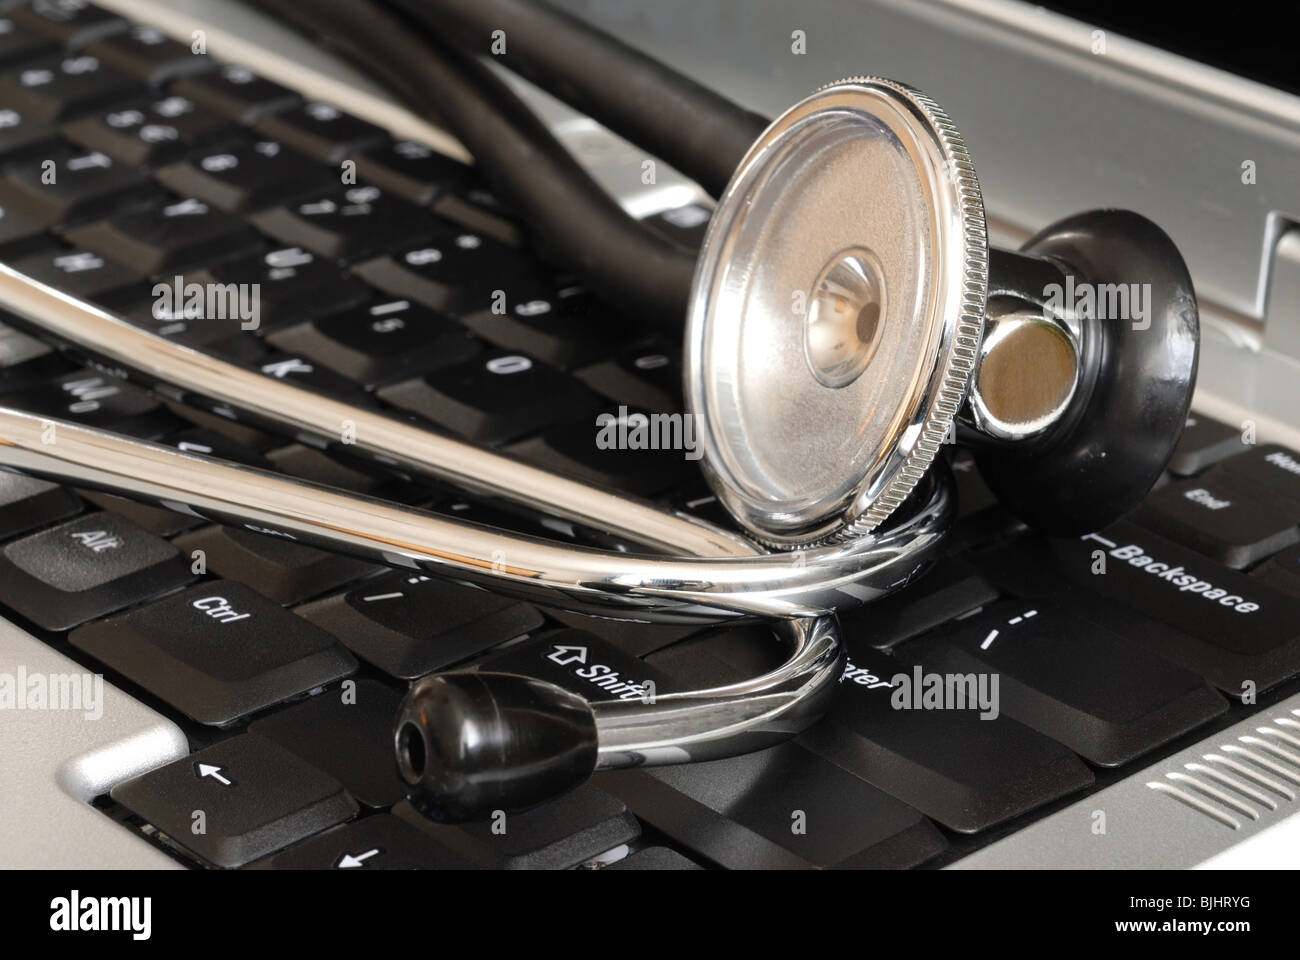 Stethoscope on Keyboard Stock Photo